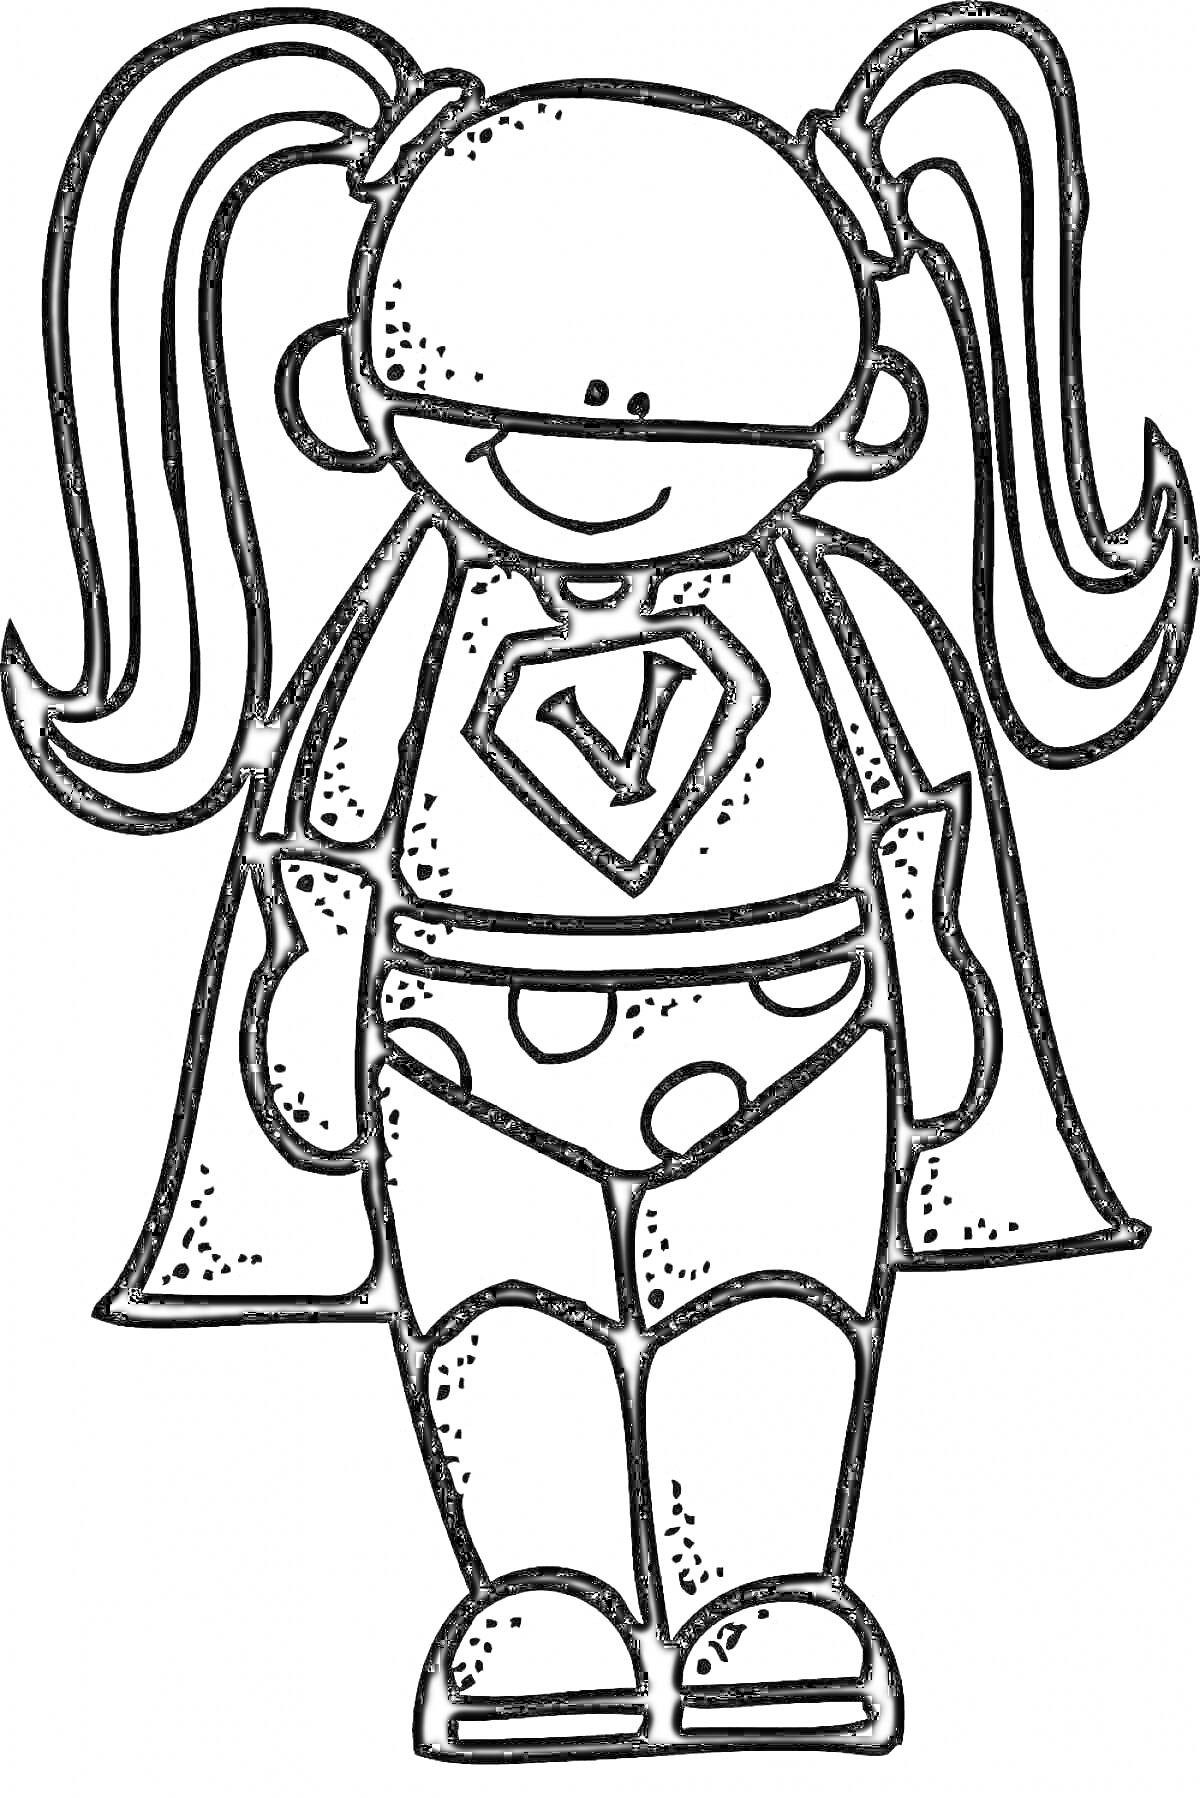 Раскраска Девочка-супергерой с хвостиками, плащом, символом V на костюме и в пятнистых трусах